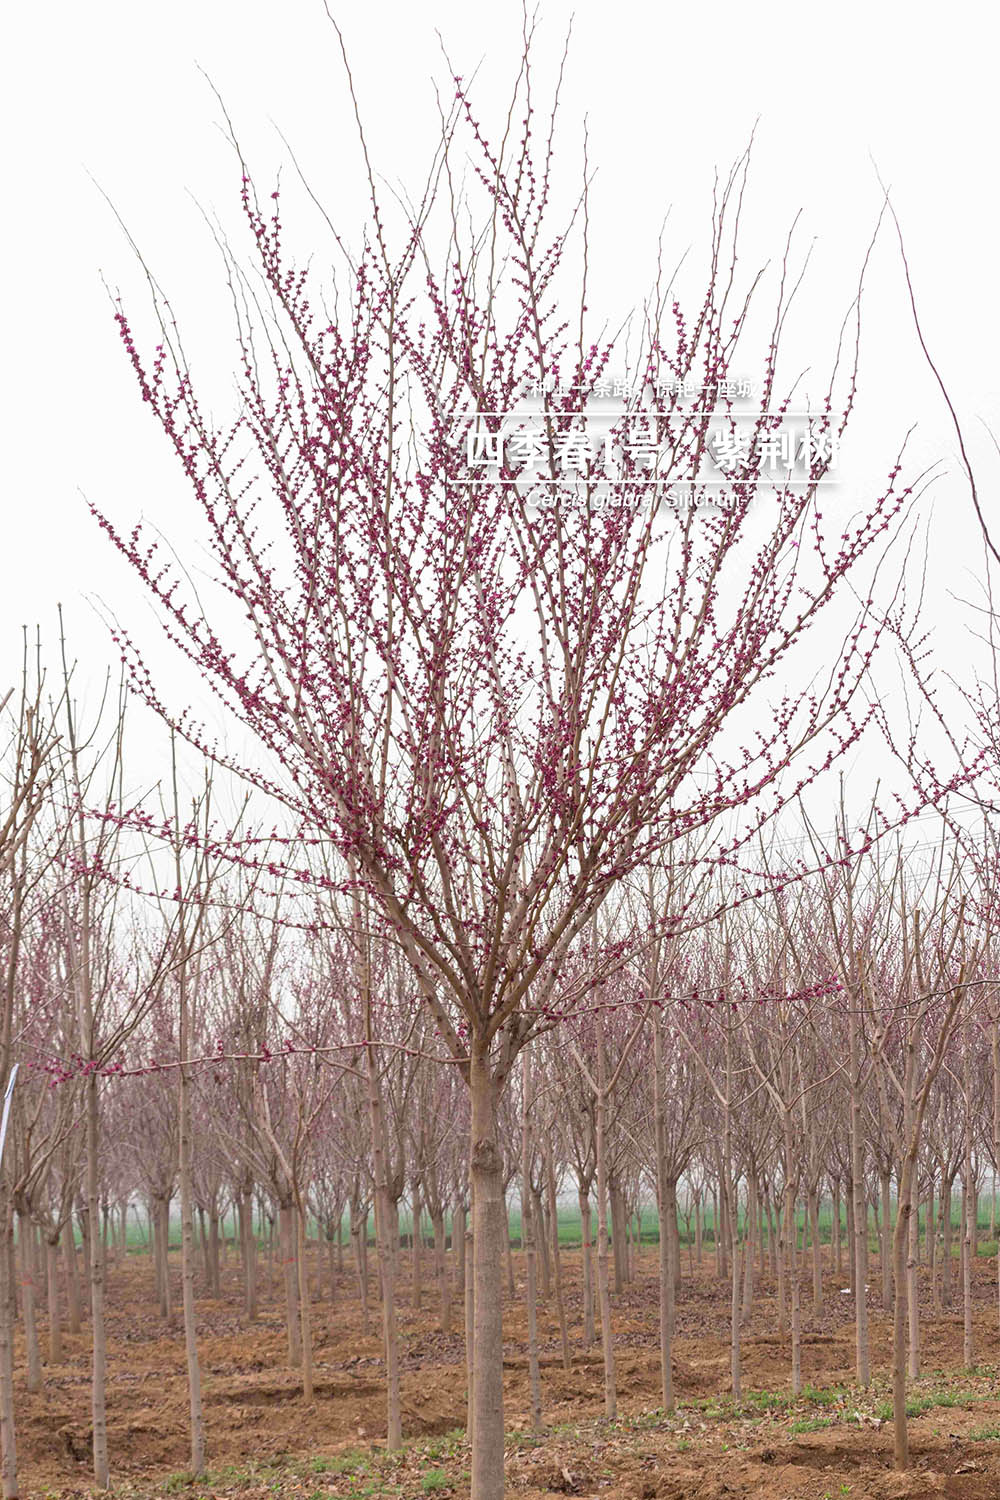 3.15“四季春一号”- 紫荆树